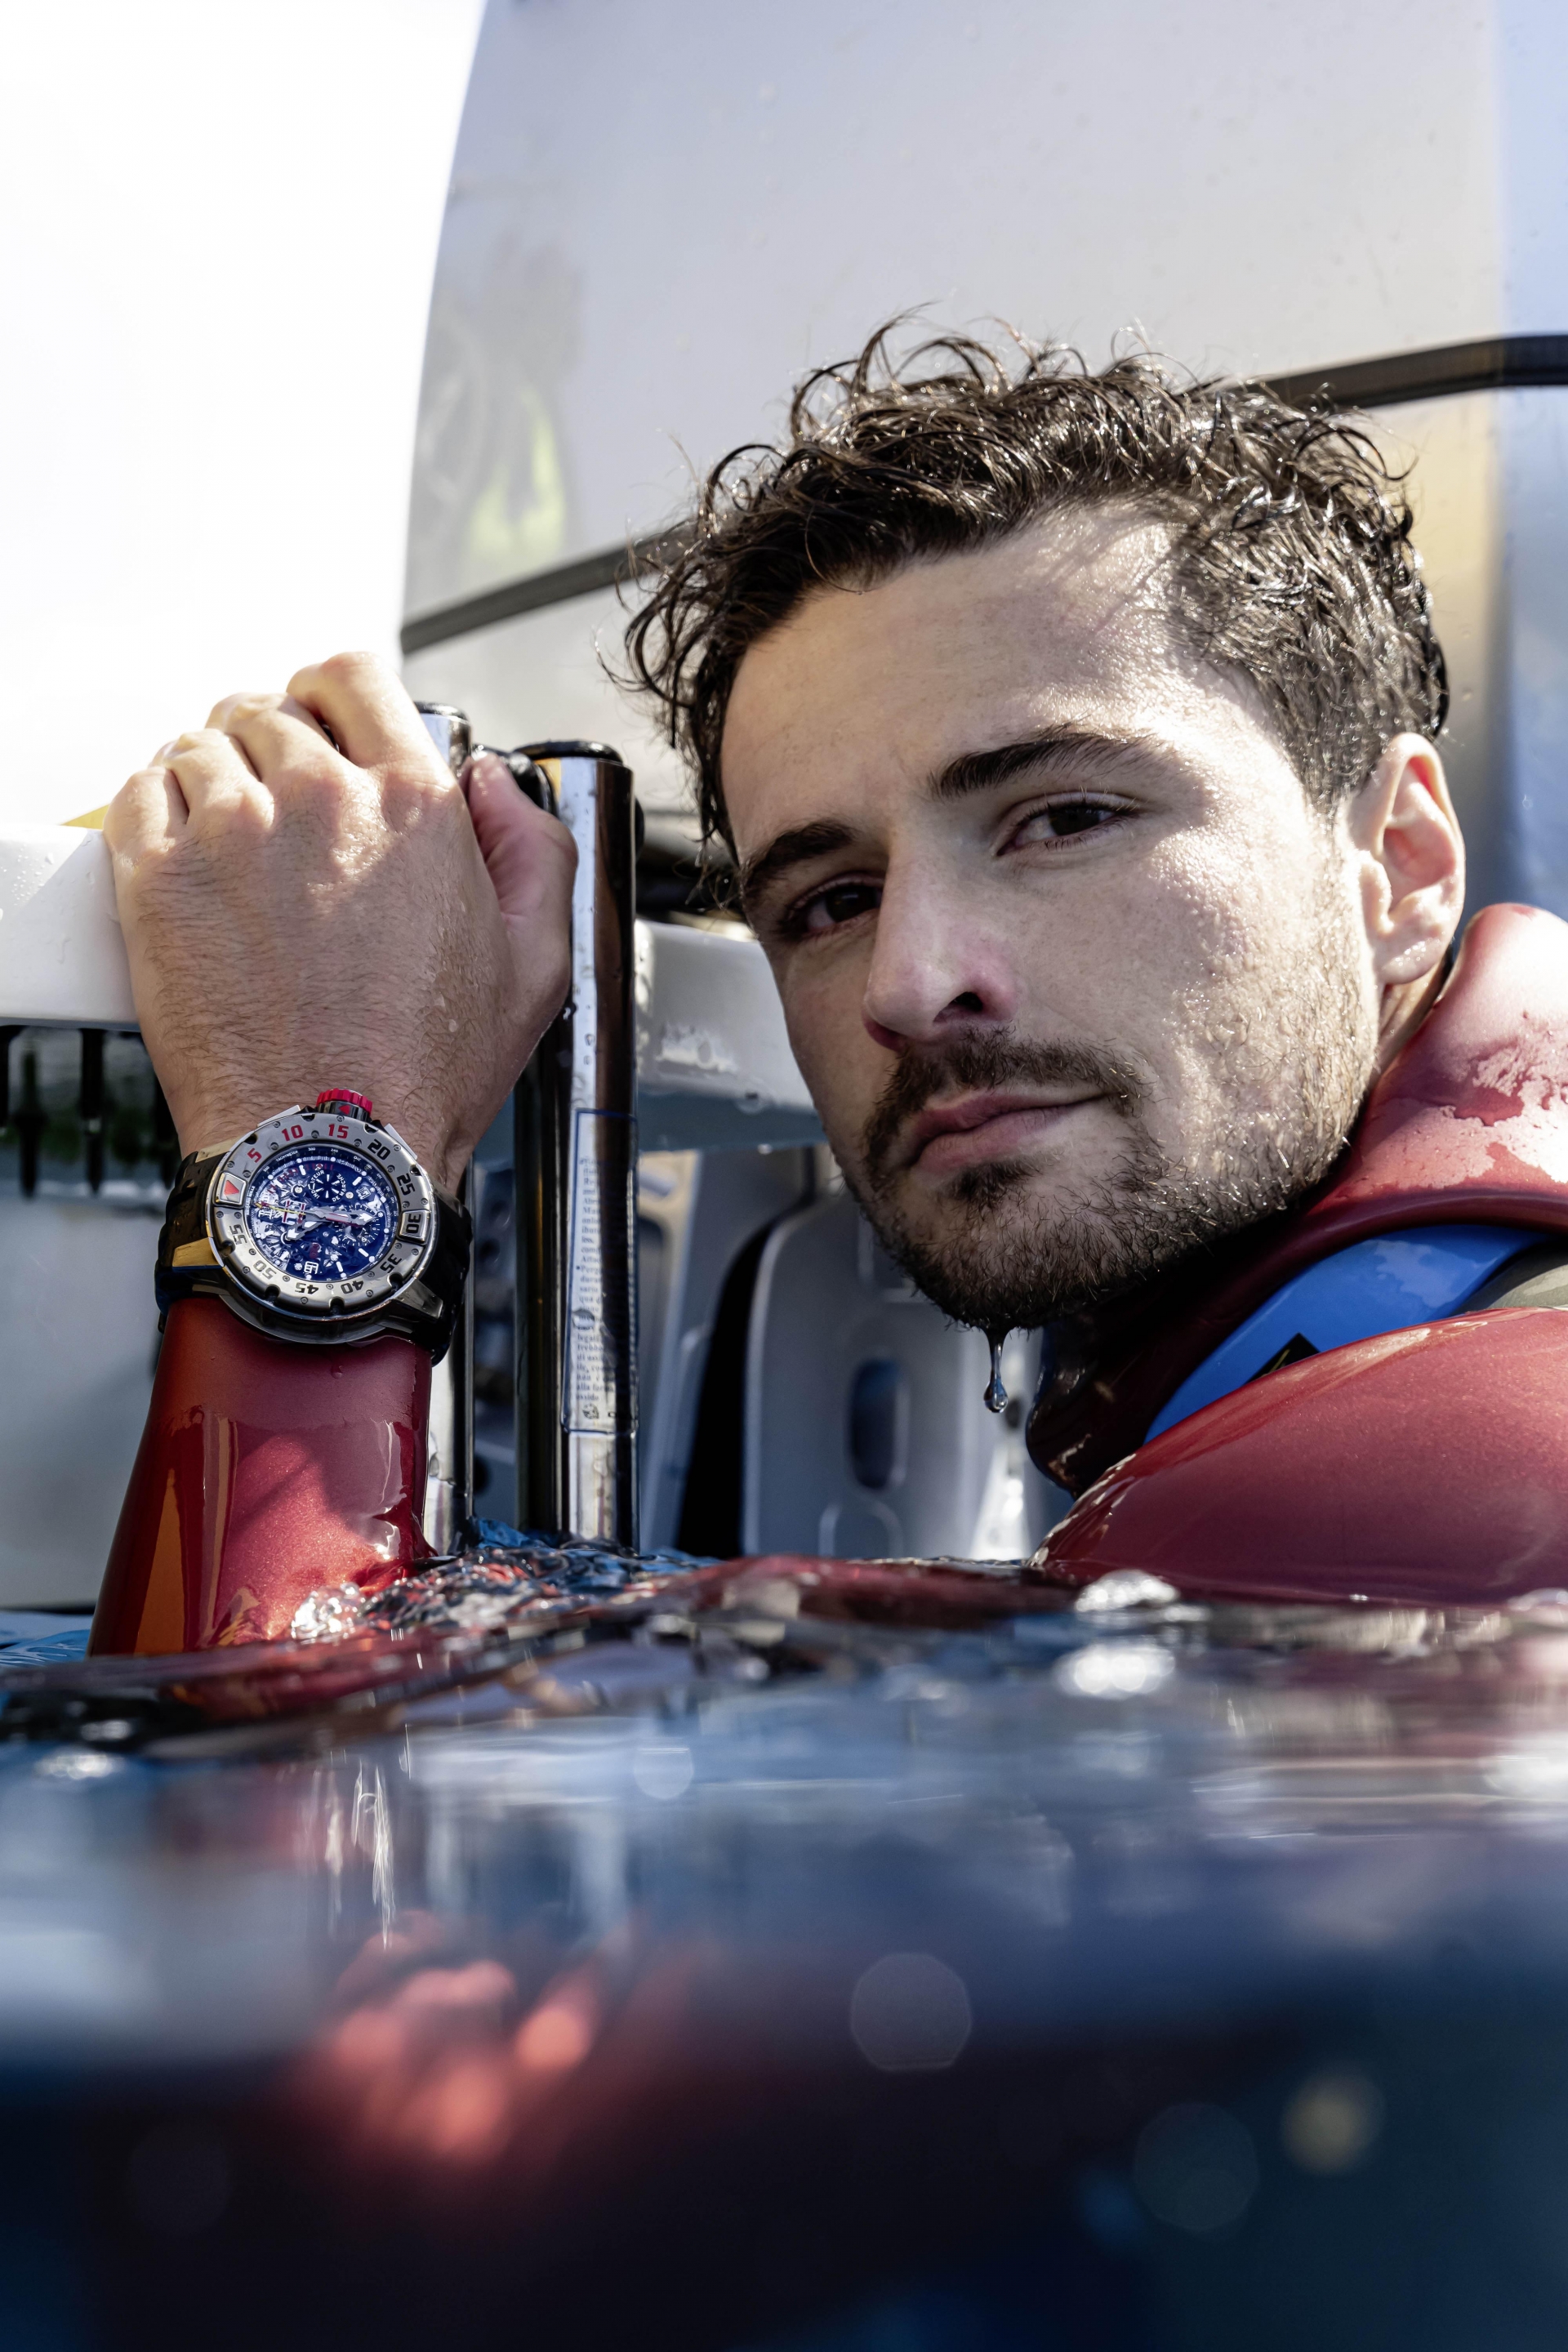 Arnaud tự chủ động liên hệ Richard Milles để dùng thử sản phẩm và điều này đã giúp anh trở thành gương mặt quảng bá cho chiếc đồng hồ đắt đỏ.